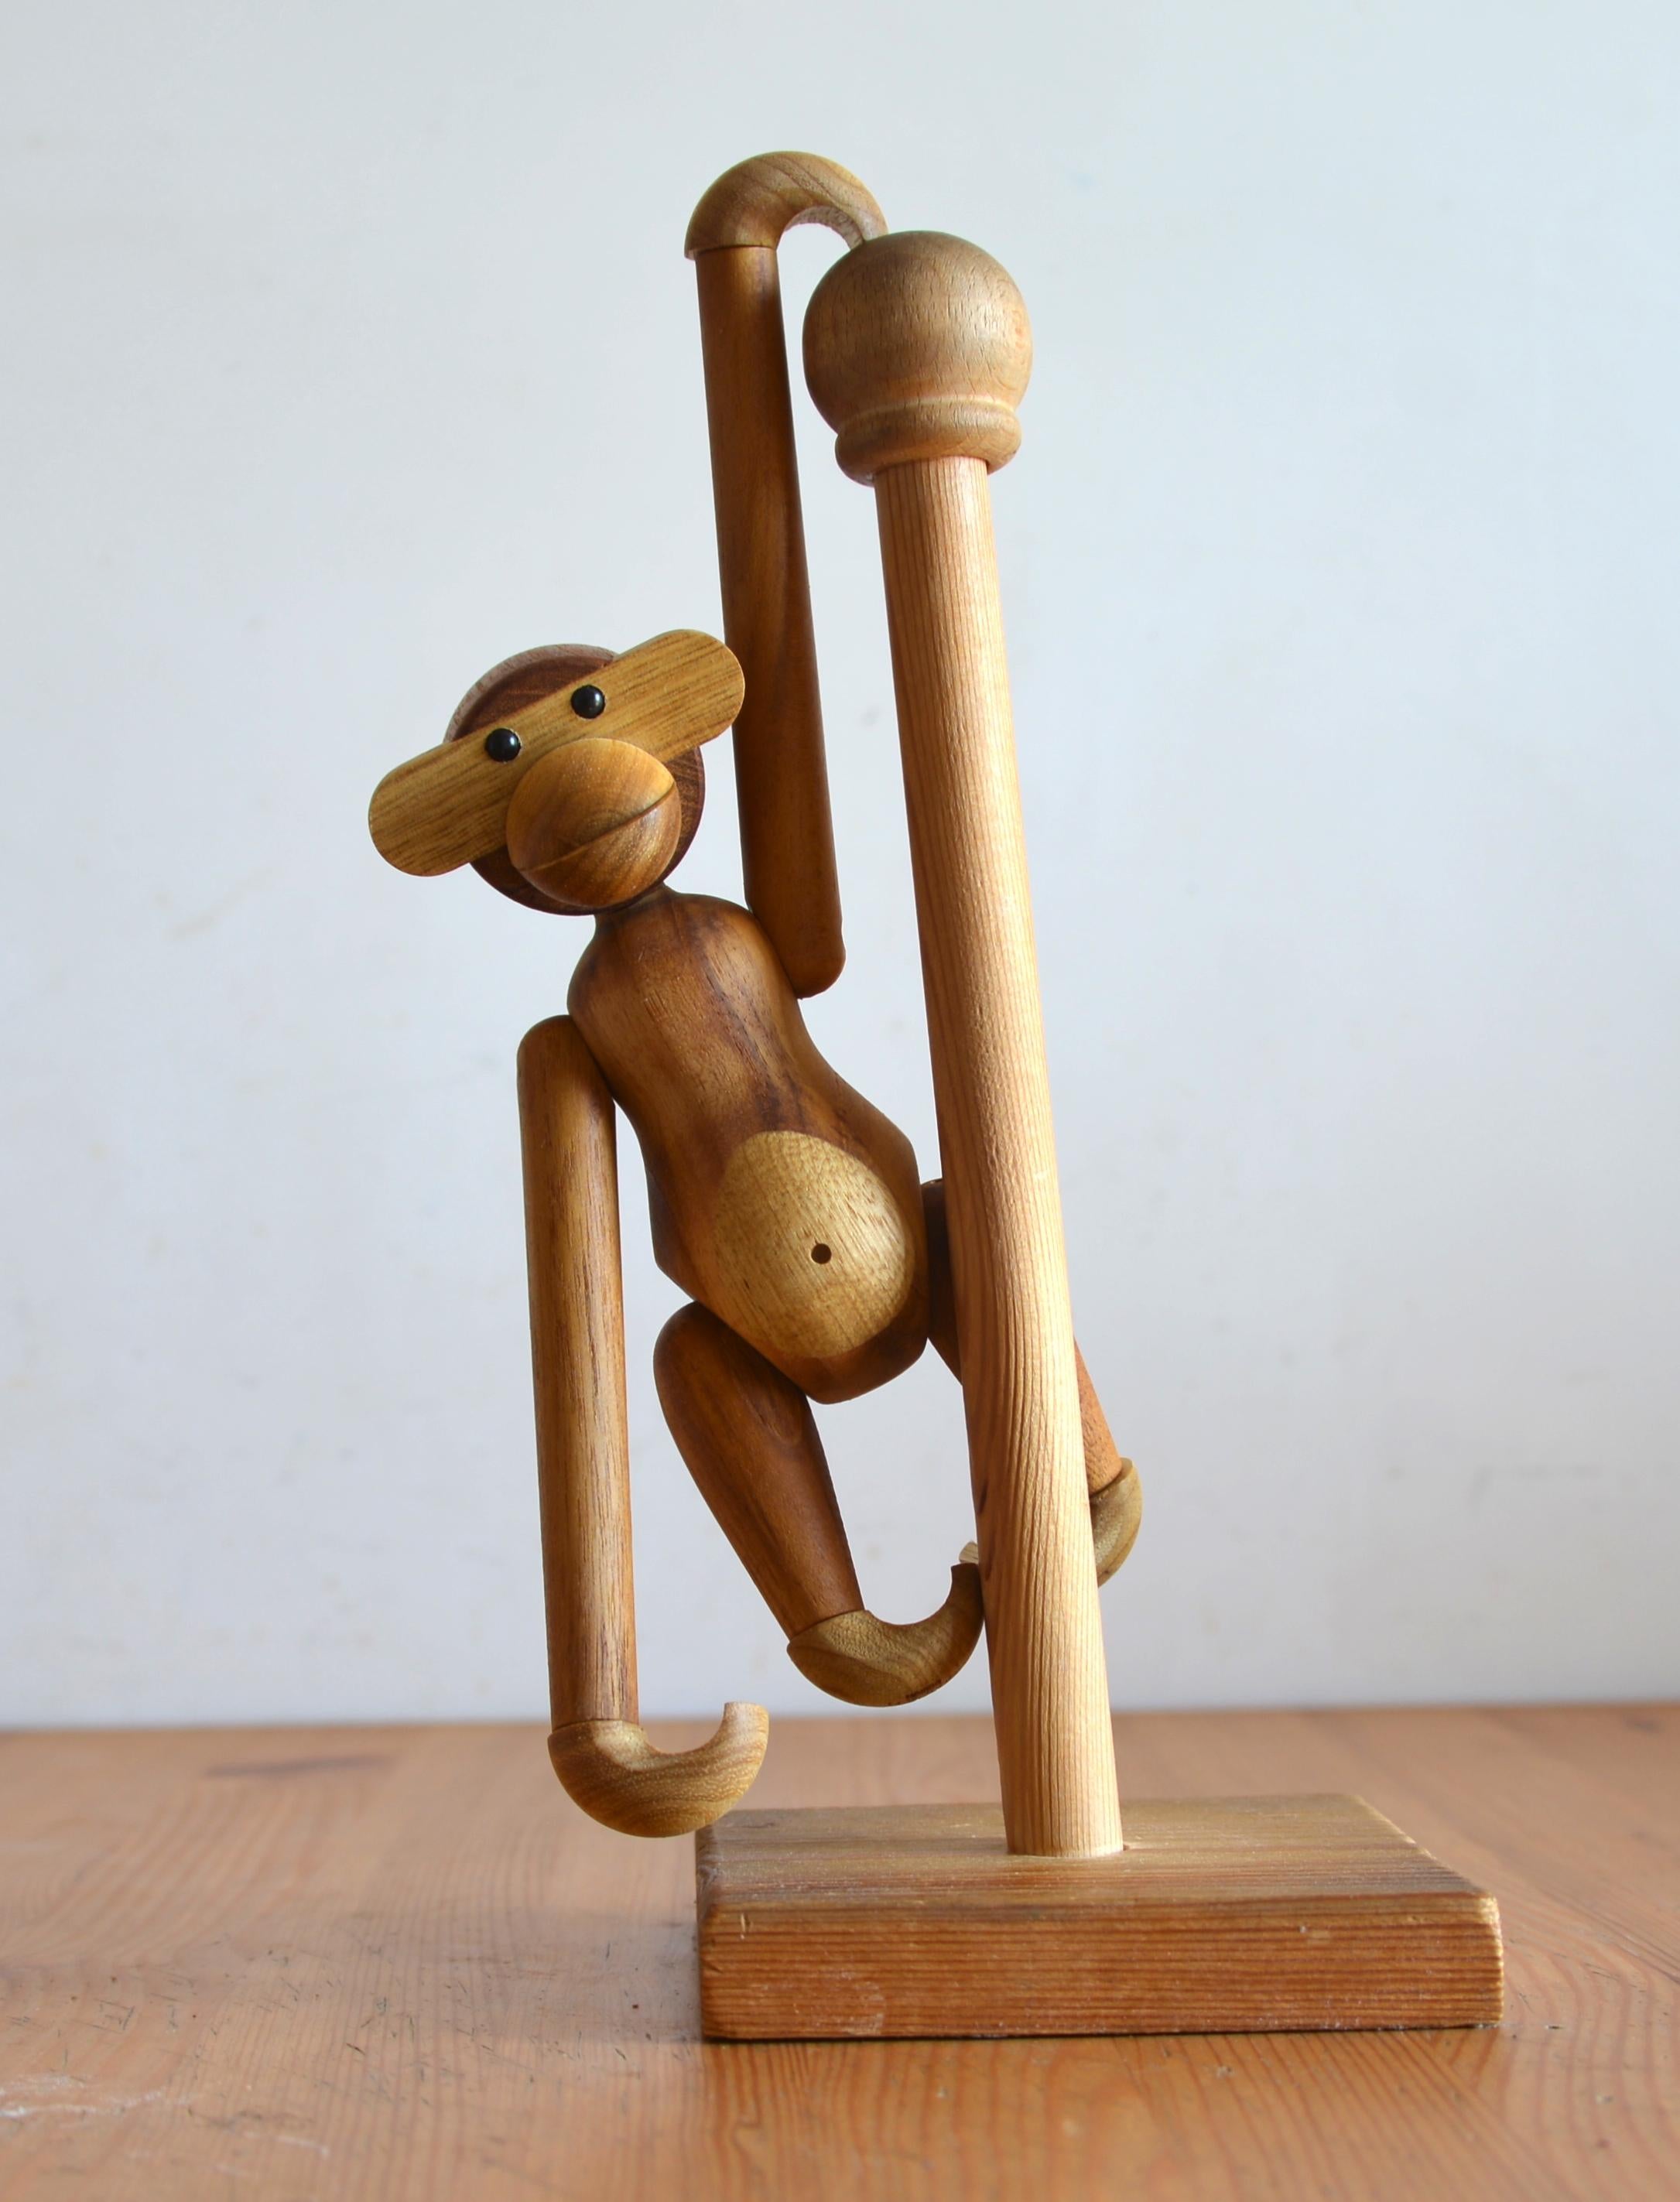  Monkey Teak Sculpture by Kay Bojesen 2